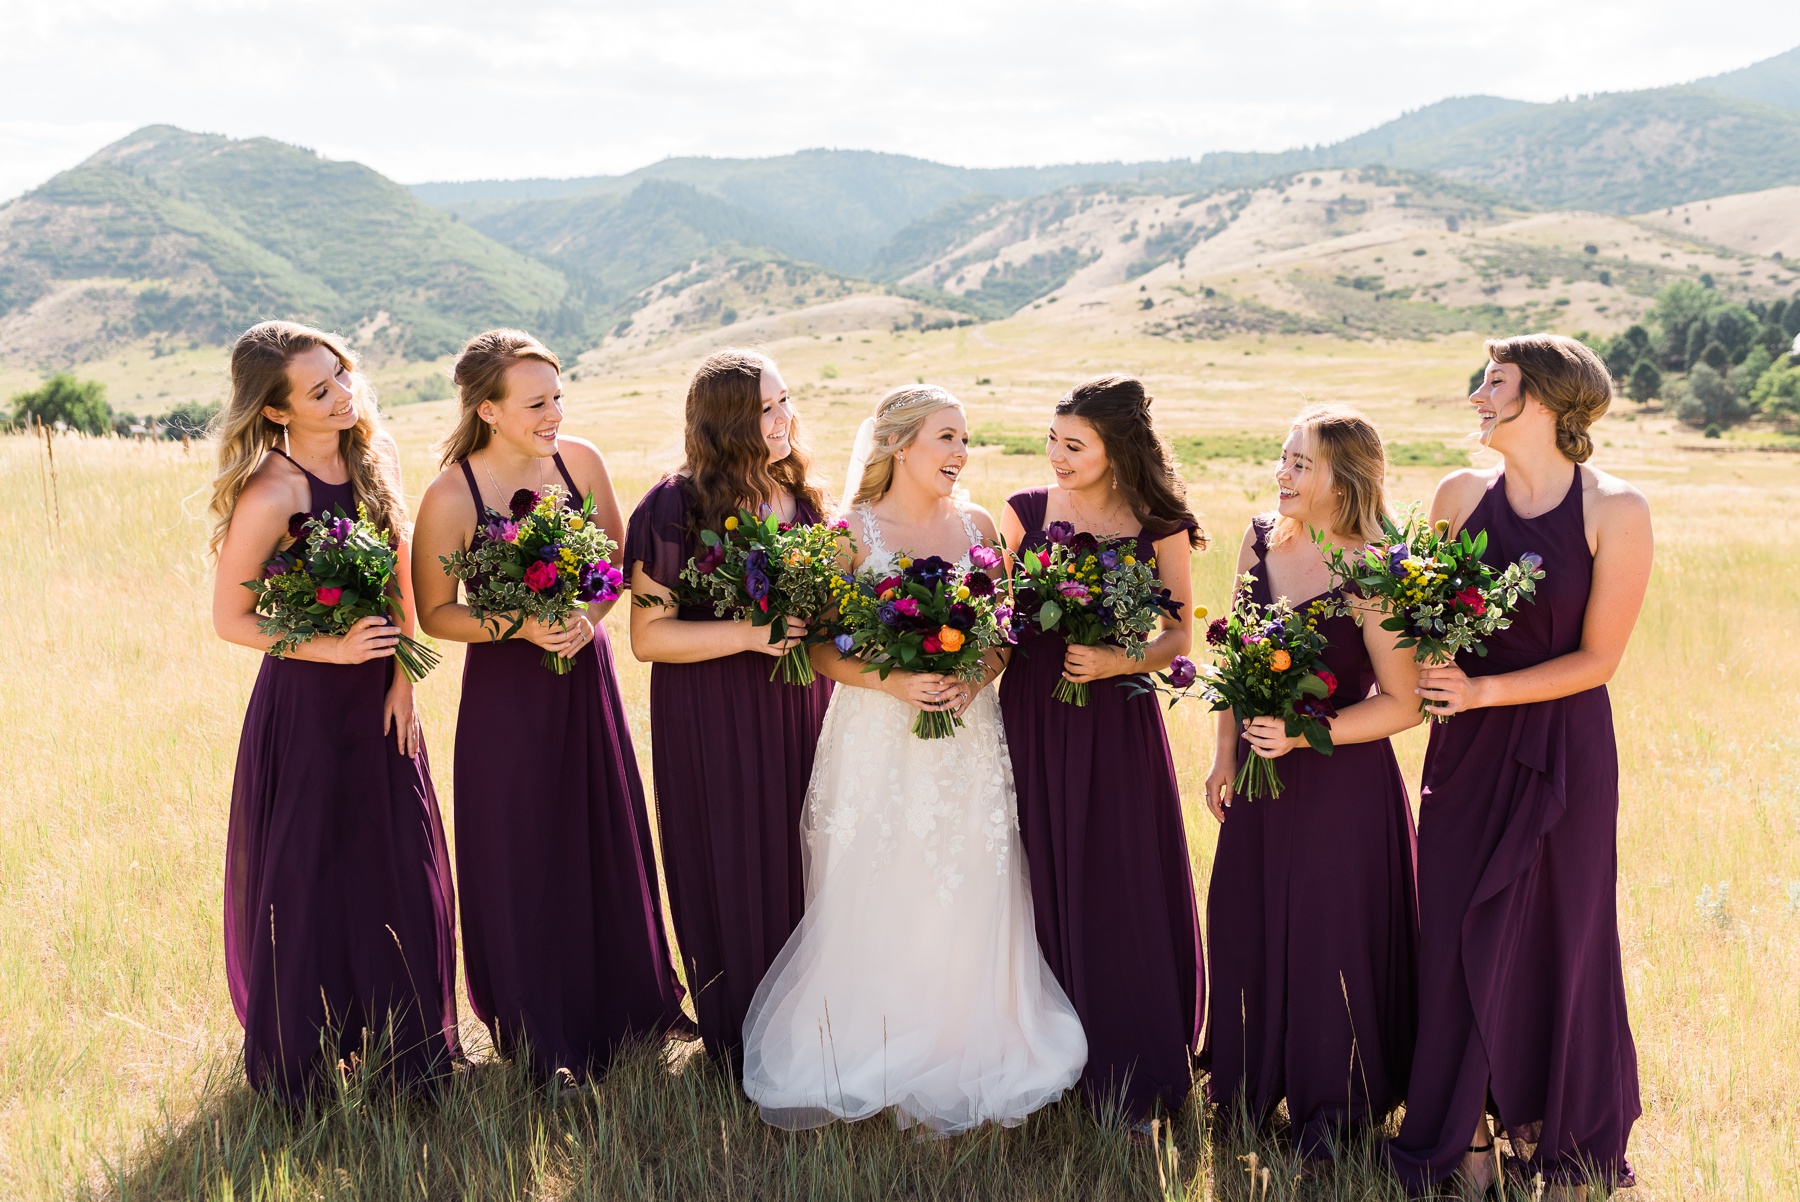 Dark Purple Bridesmaid Dresses